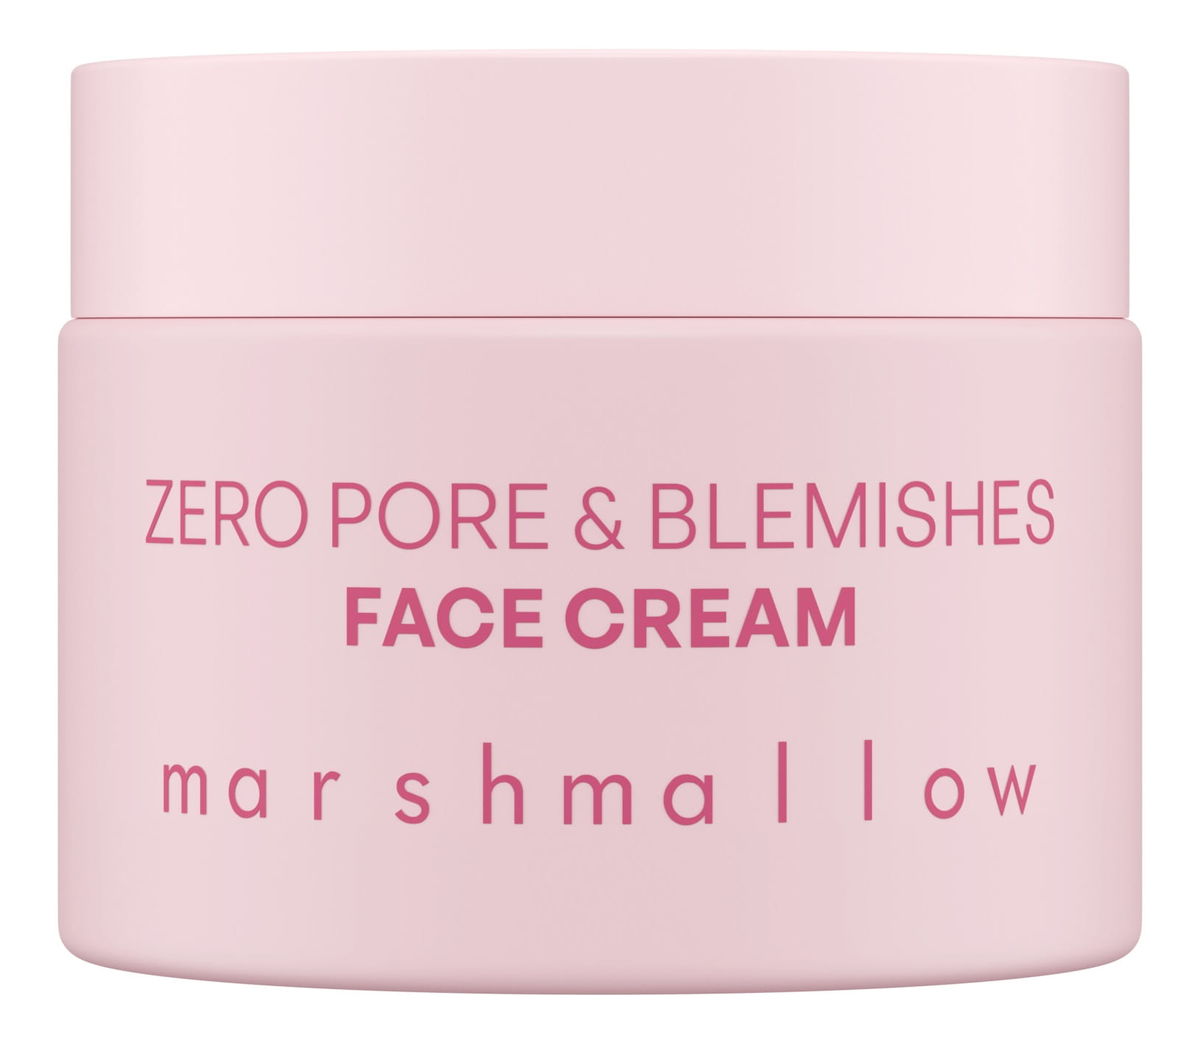 Marshmallow Krem do twarzy + Serum + Pianka do oczyszczania